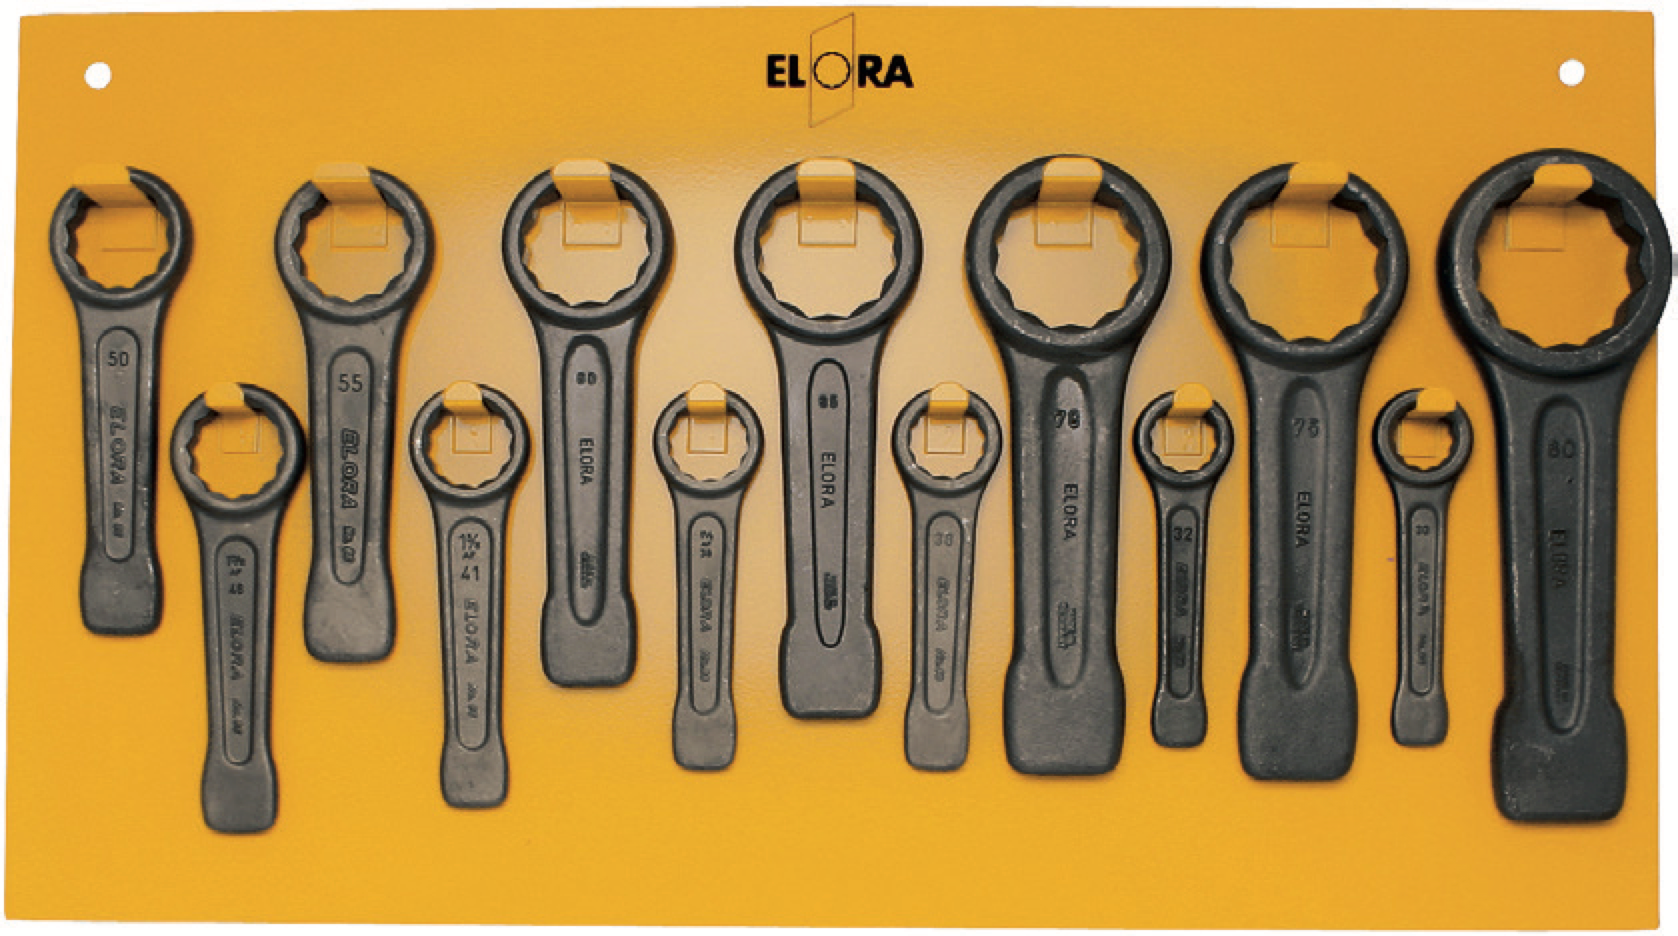 ELORA 86S-13 Ring Slogging Spanner Set (ELORA Tools) - Premium Slogging Spanner Set from ELORA - Shop now at Yew Aik.